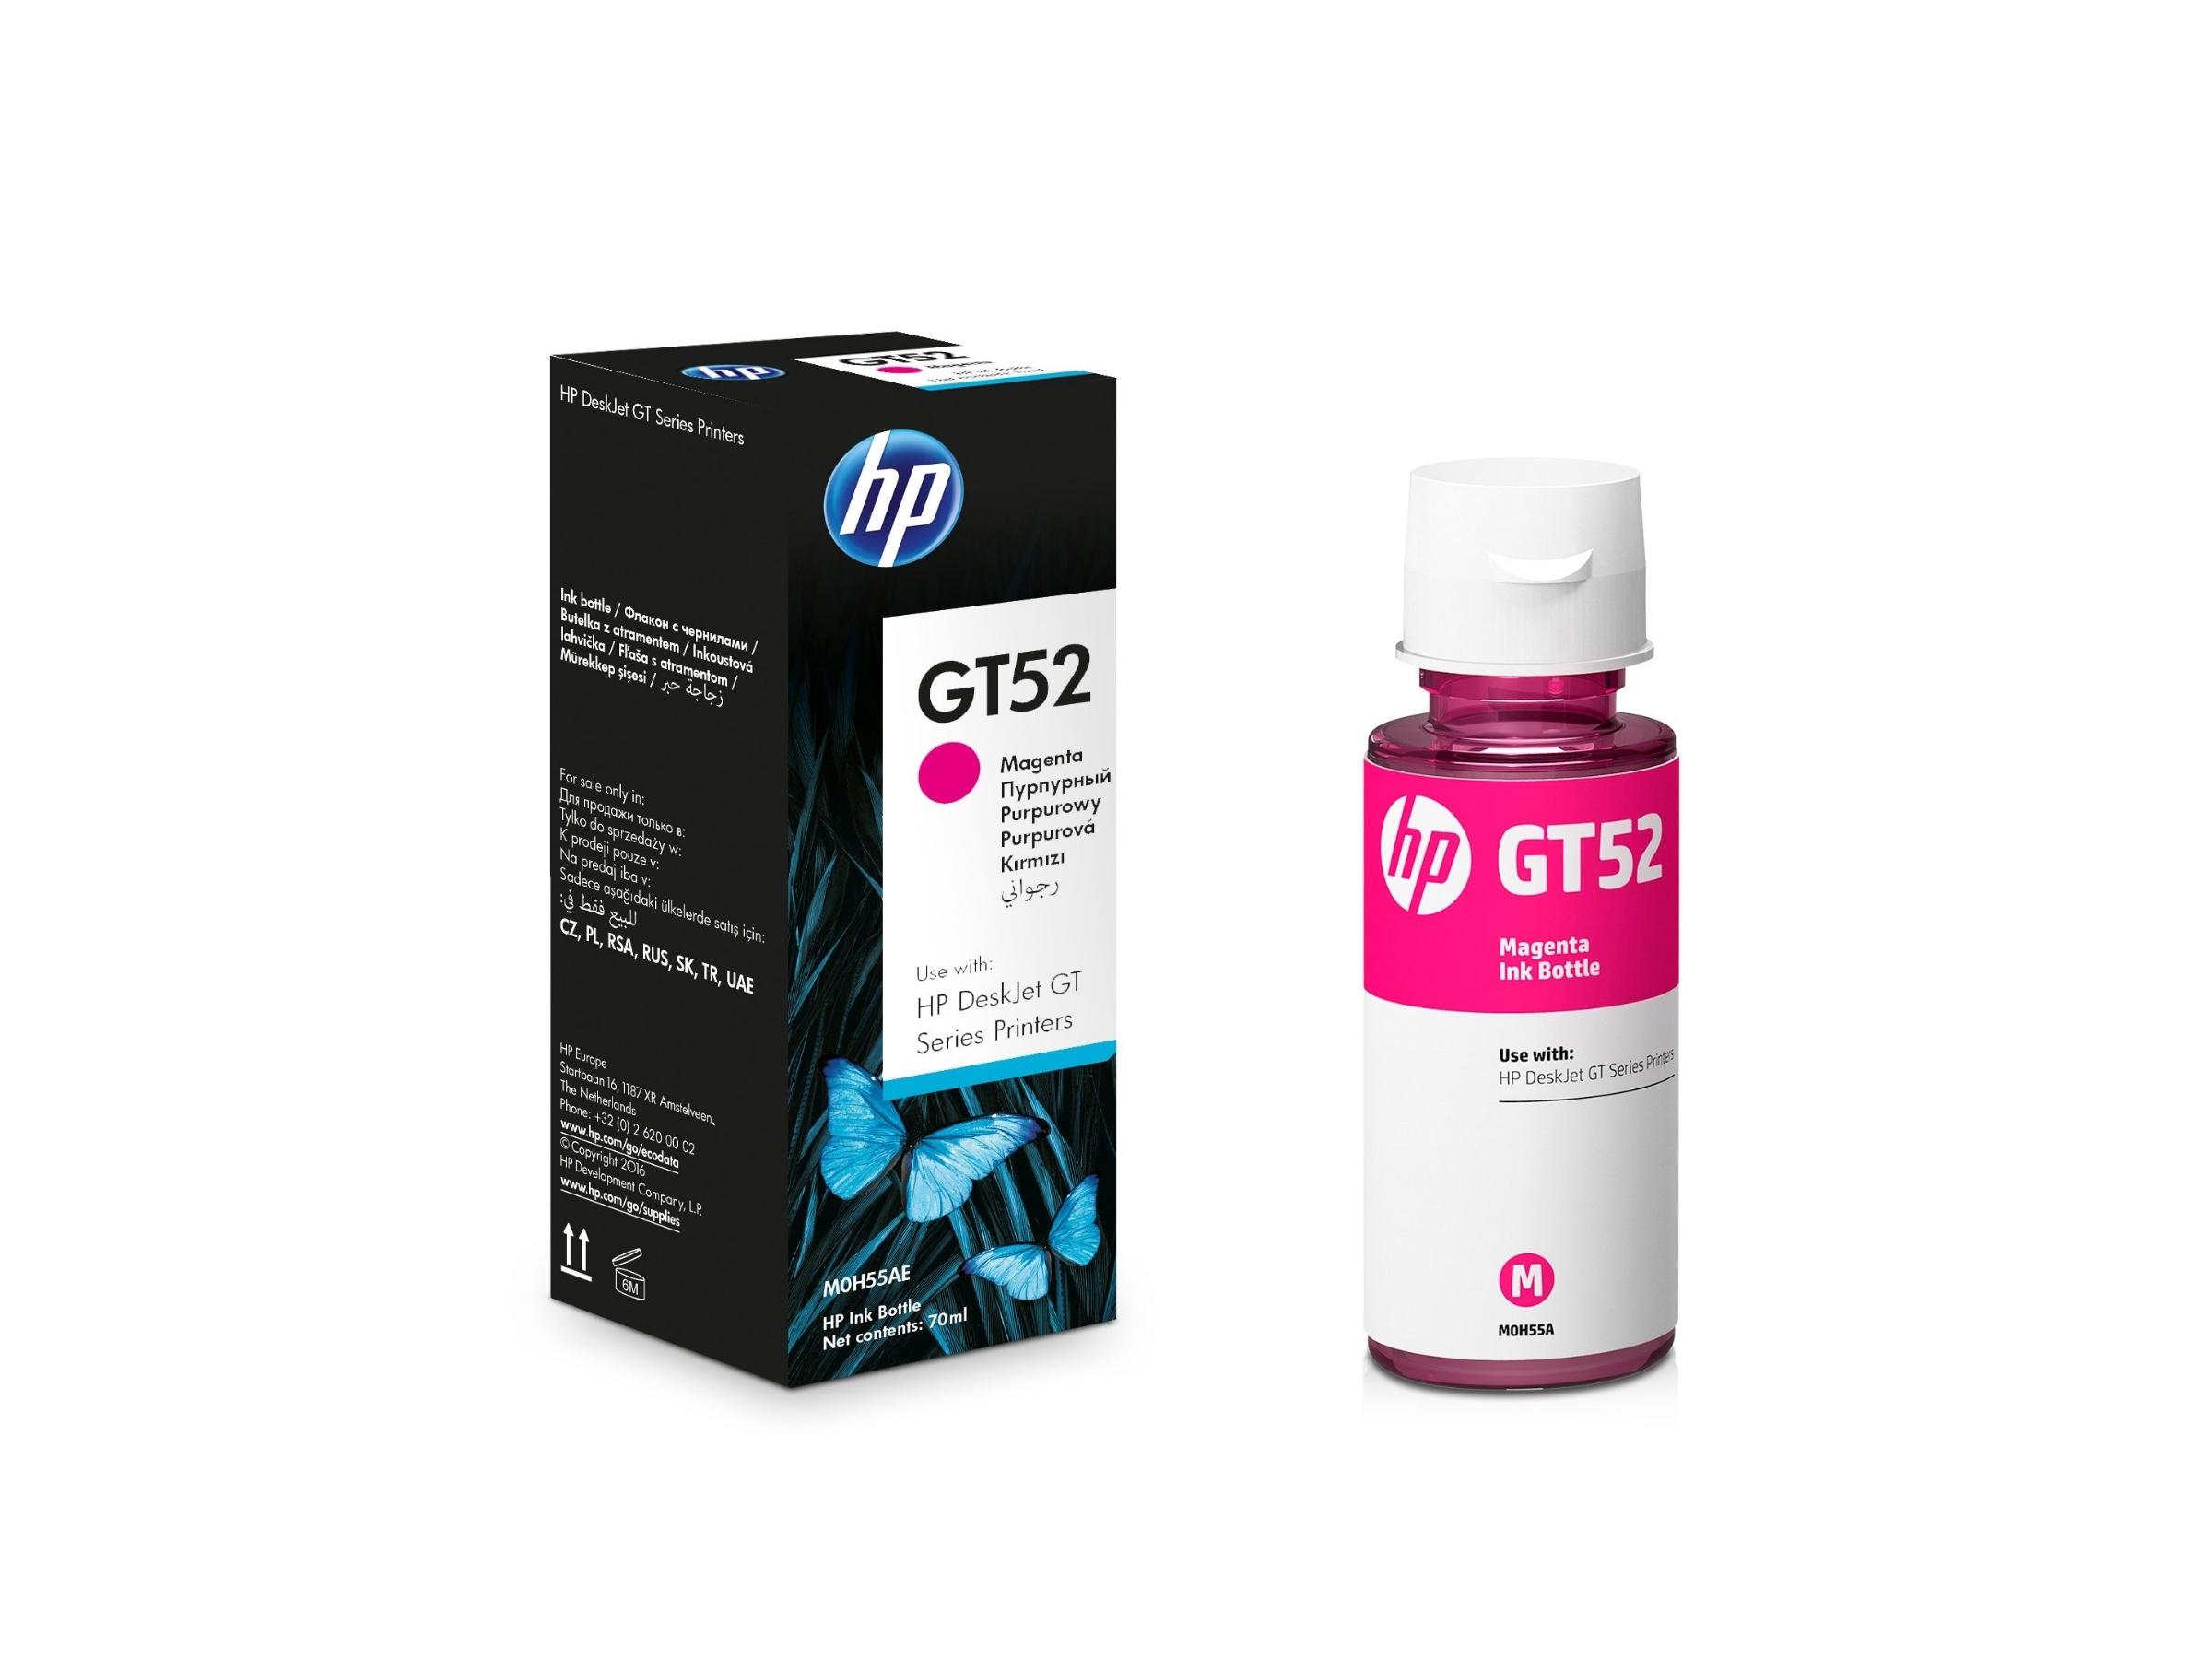 BOTELLA DE TINTA HP GT52 MAGENTA (M0H55AL) 70 ML